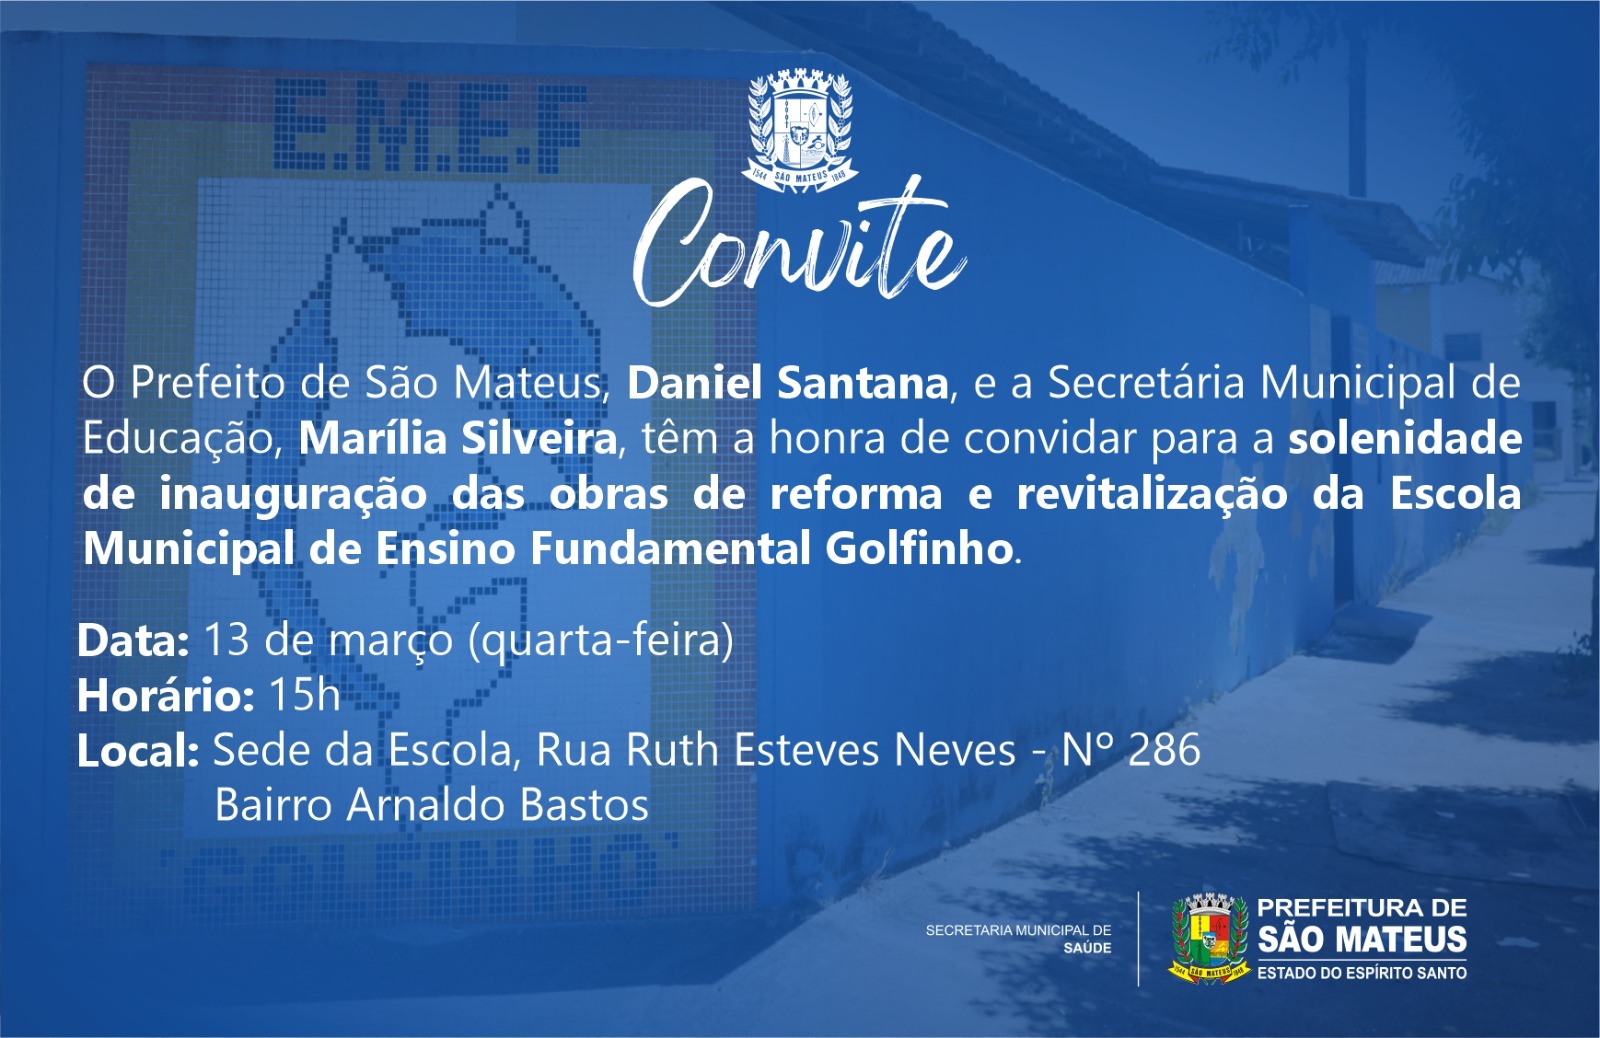 CONVITE - inauguração das obras de reforma e revitalização da Escola Municipal de Ensino Fundamental Golfinho